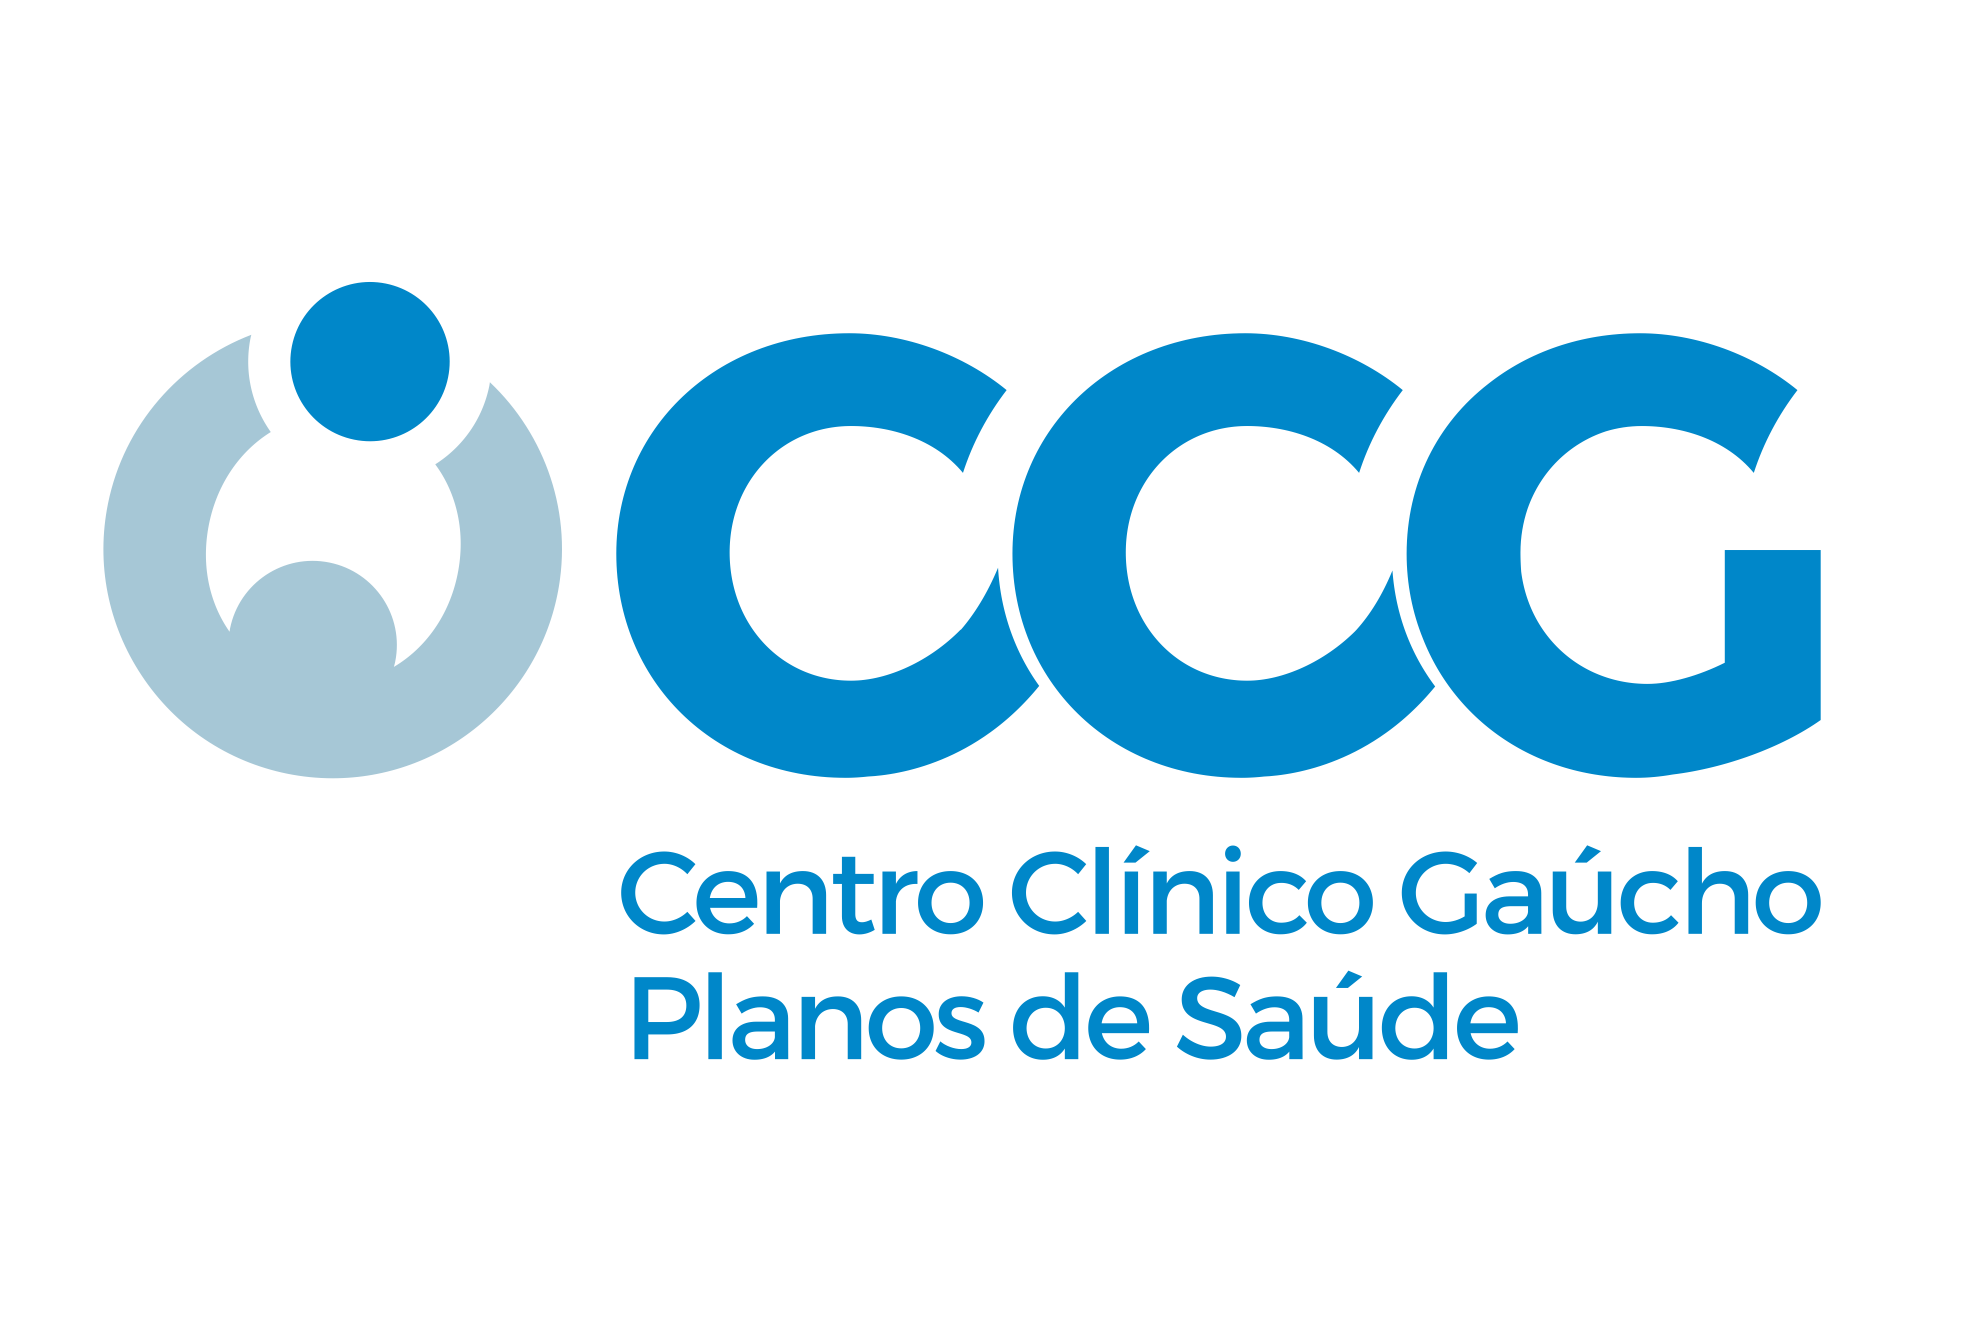 CENTRO CLINICO GAUCHO - Planos de Saúde - Porto Alegre, RS